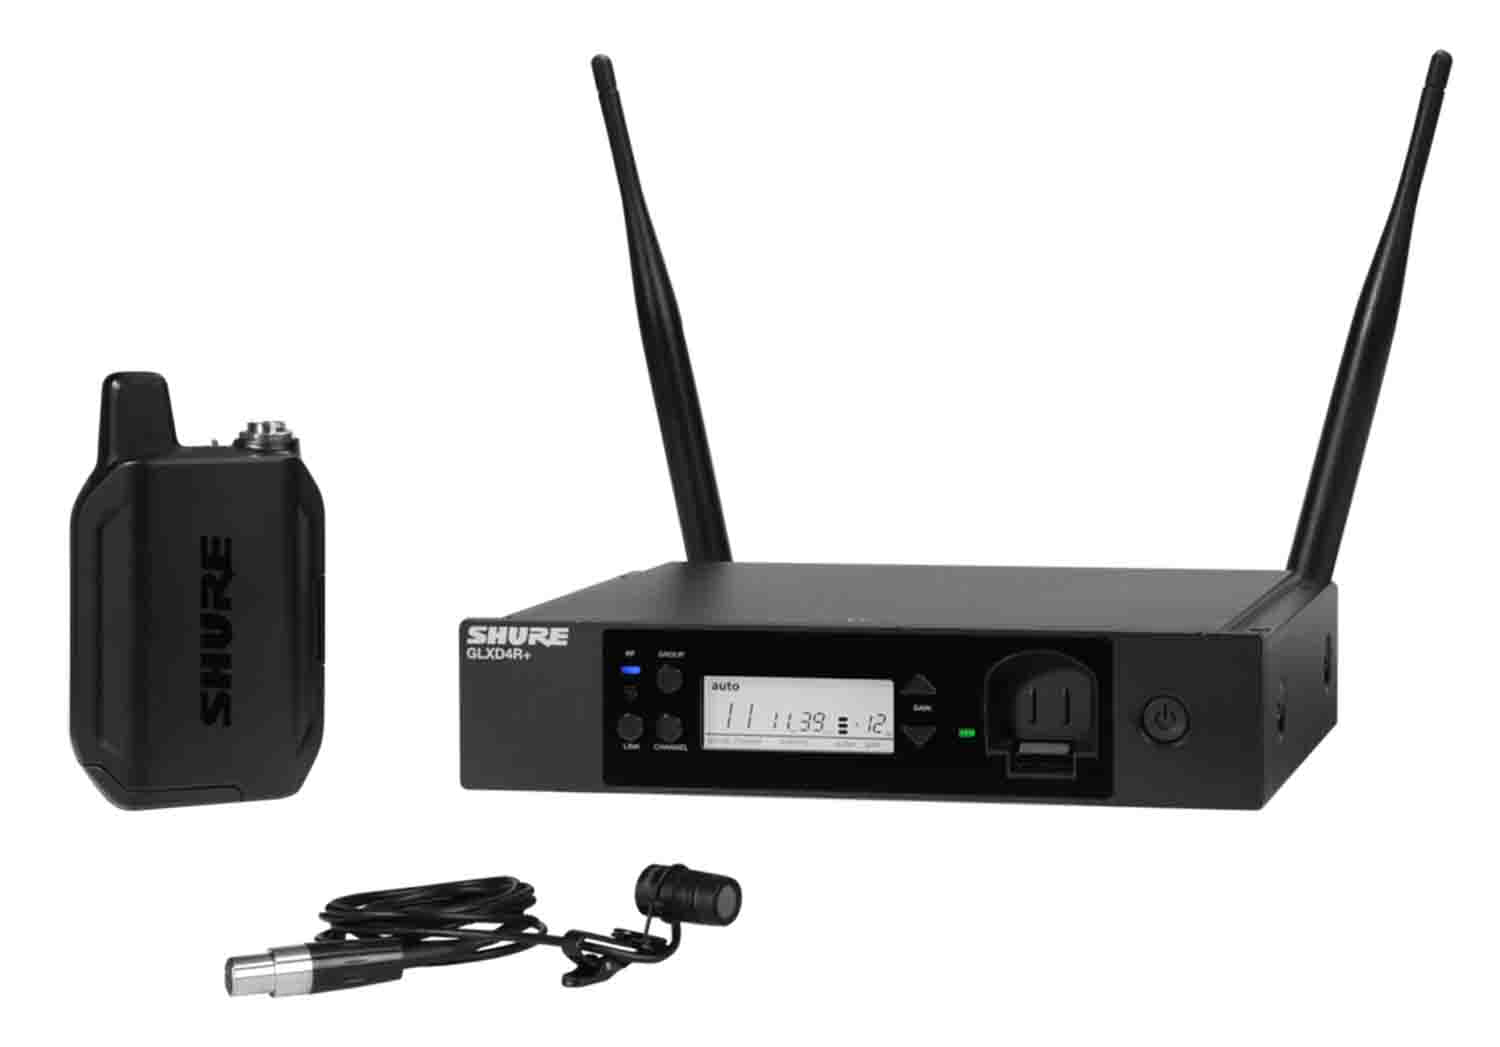 Shure GLXD14R+/85-Z3 Digital Wireless Rack System with WL185 Lavalier Microphone - Hollywood DJ